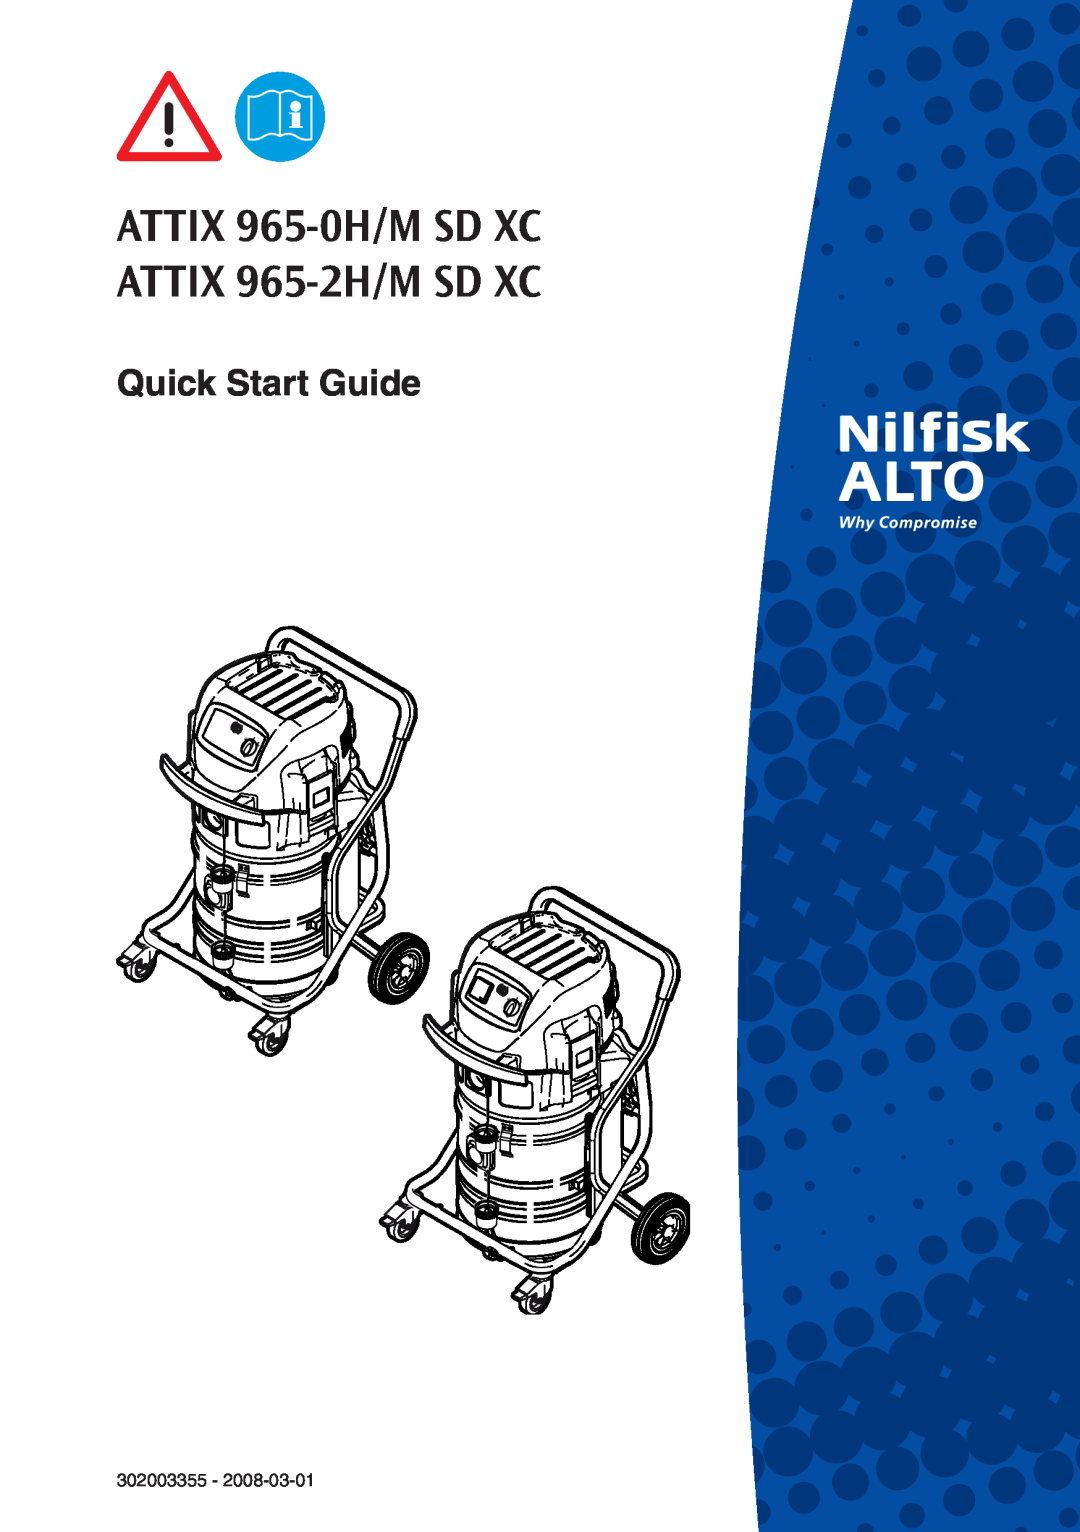 Nilfisk-ALTO 965-0H/M SD XC quick start ATTIX 965-0H/MSD XC ATTIX 965-2H/MSD XC, Quick Start Guide, 302003355 